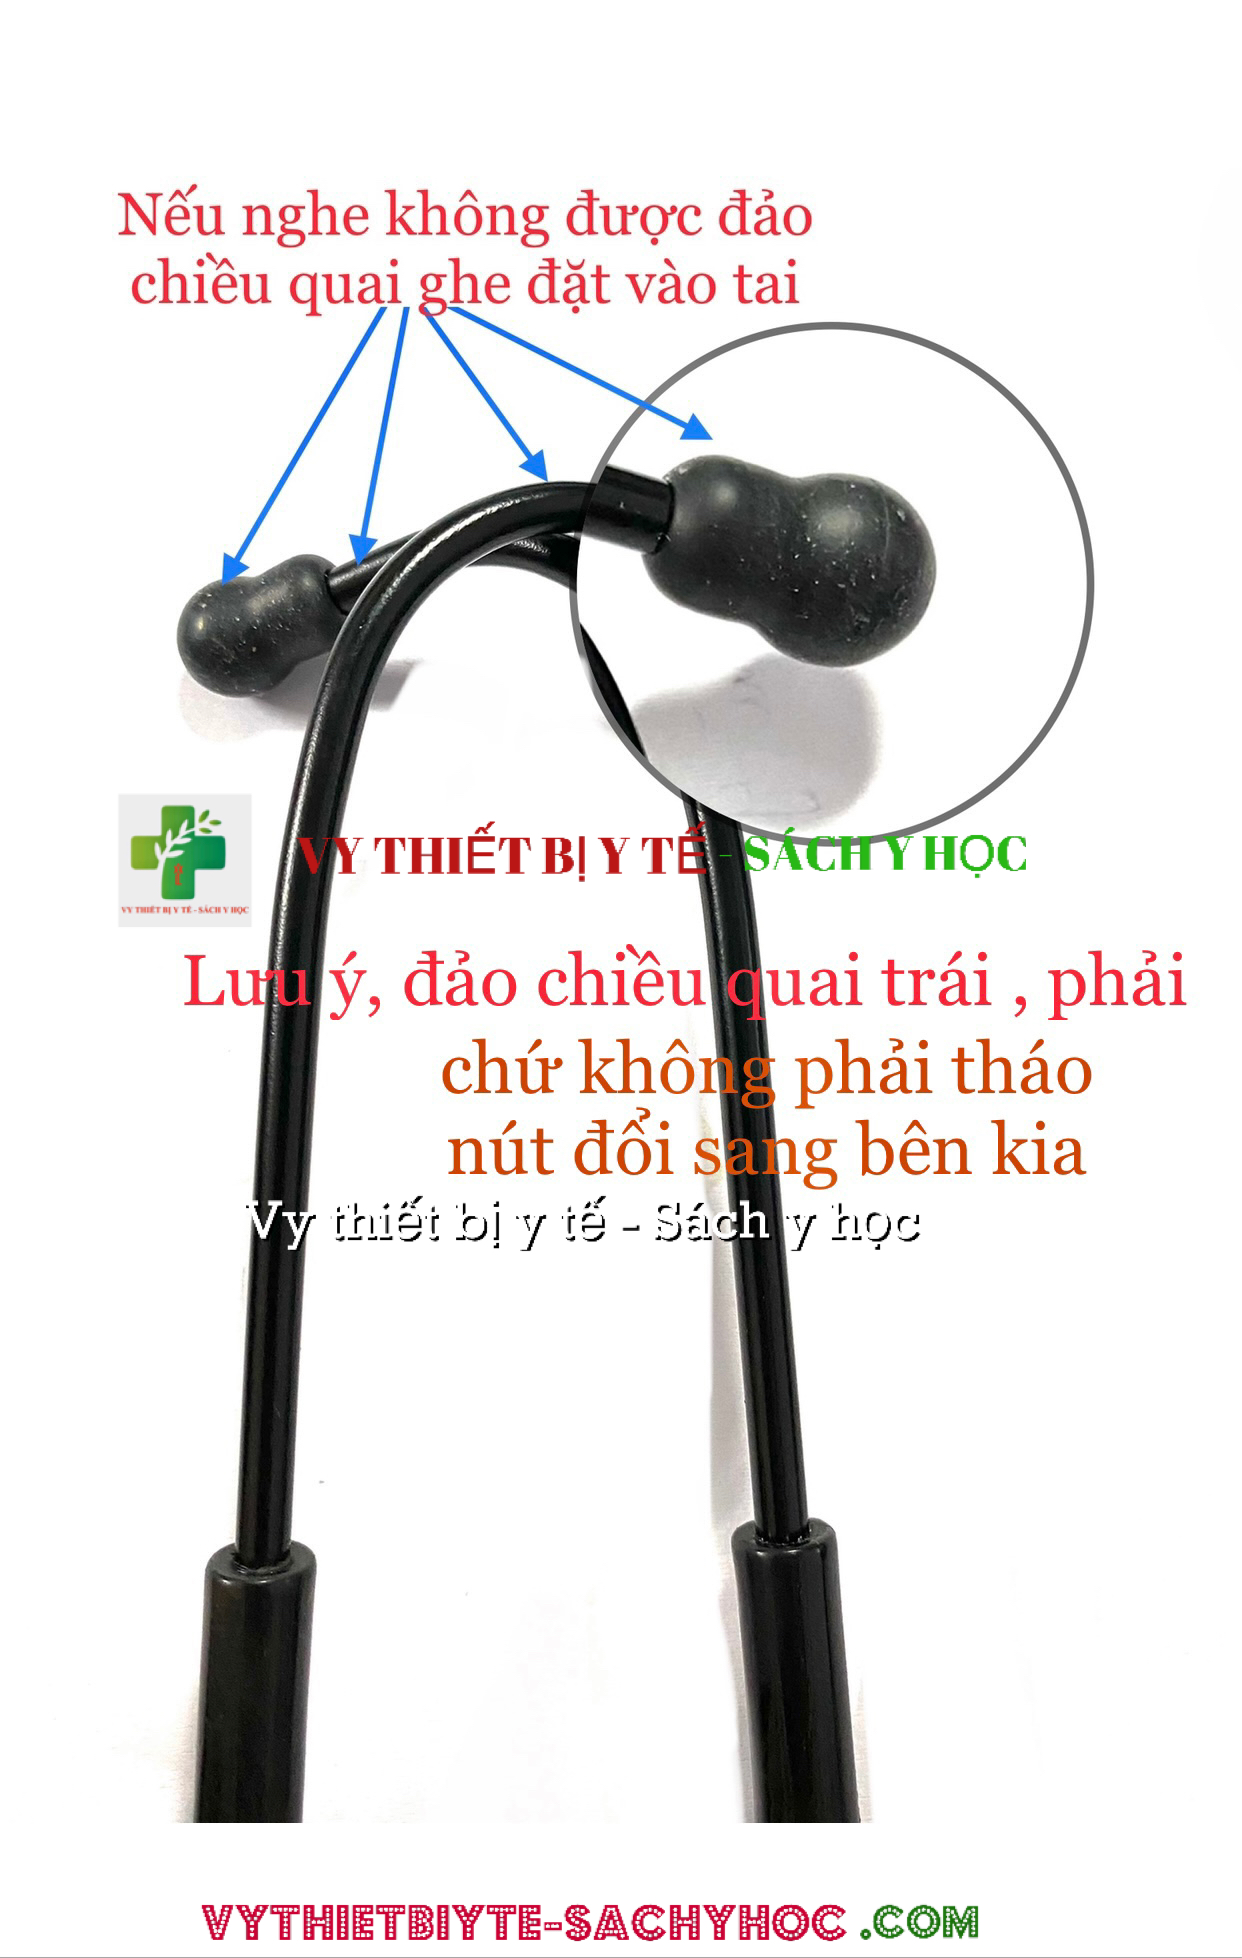 Hướng dẫn sử dụng ống nghe đúng cách và những lỗi thường gặp khi không nghe được ống nghe.